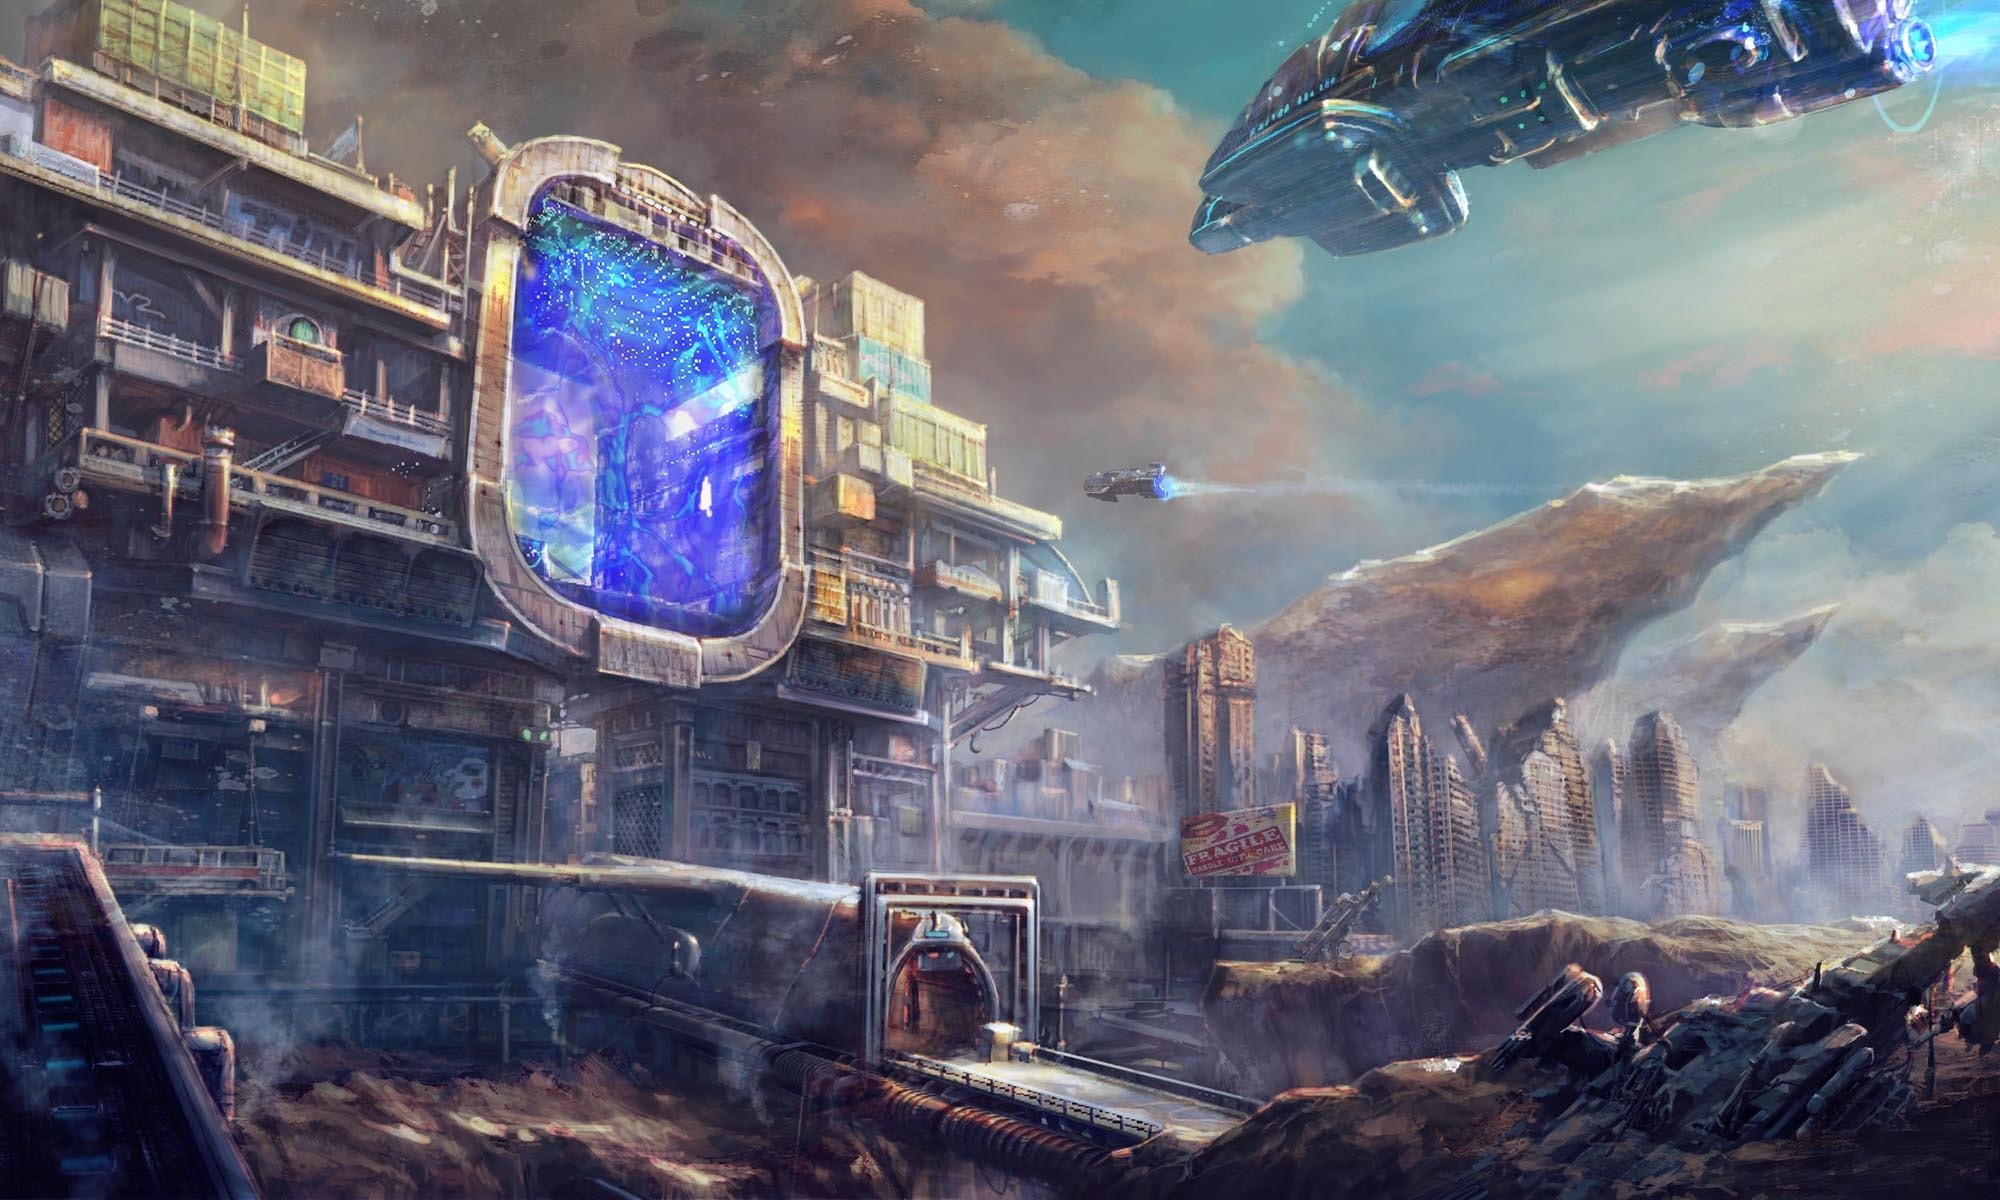 Мир научной фантастики. Научно-фантастический город (Sci-Fi City) Universal Singgapor. Научная фантастика космический корабль. Футуристический город. Космические корабли будущего.